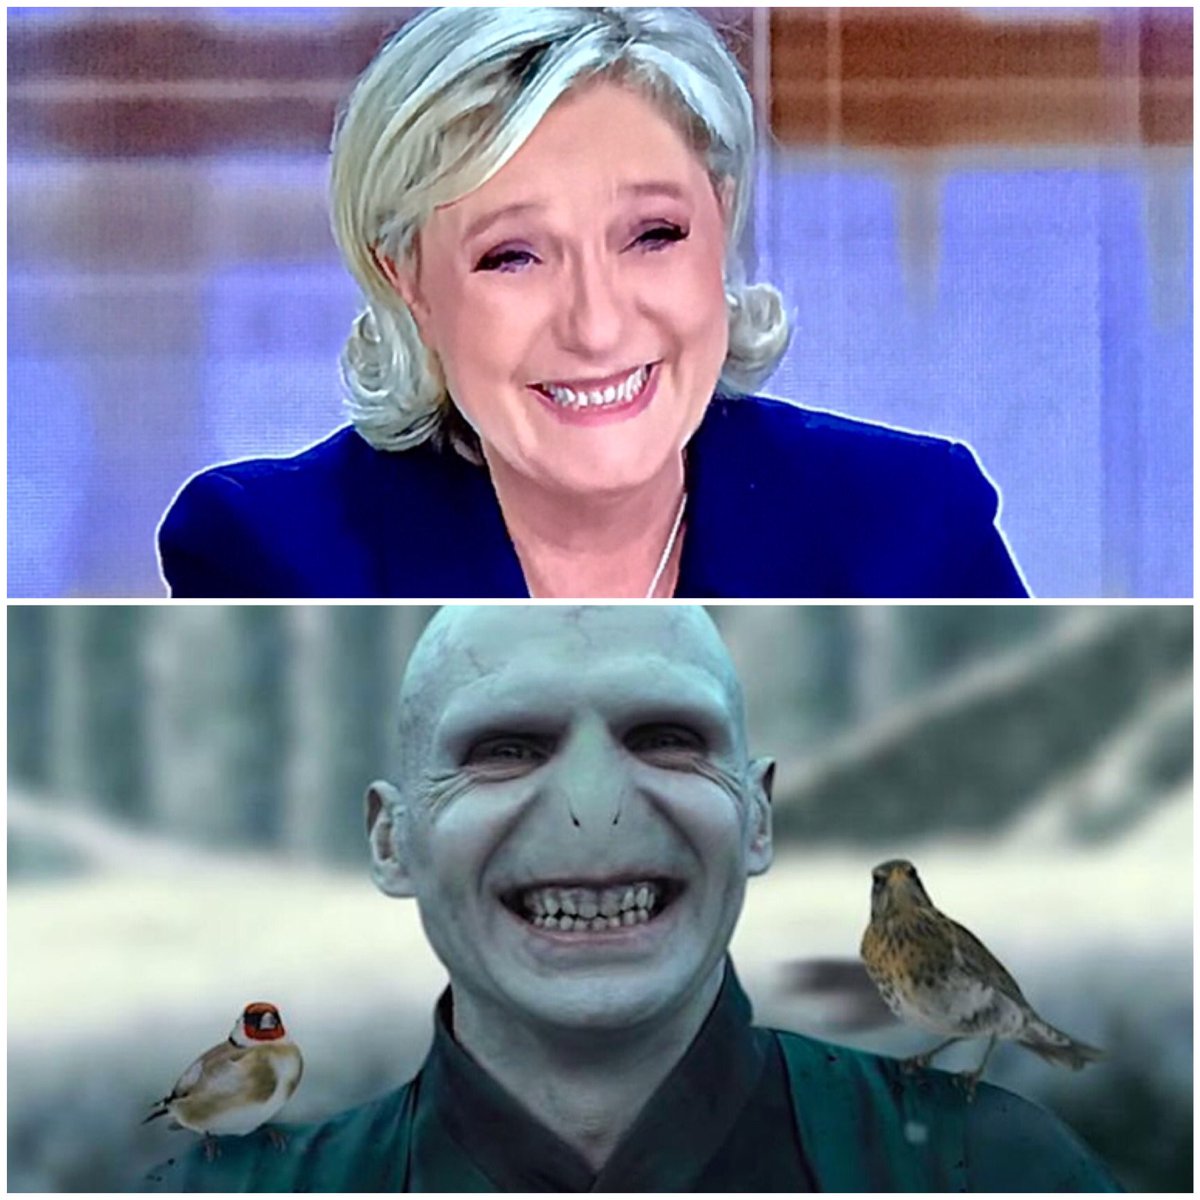 Christophe Beaugrand-Gerin on Twitter: "Quand tu penses que Marine Le Pen  n'a pas pu venir et que c'est Voldemort qui participe au débat ce soir  😂😂😂 #2017LeDebat https://t.co/U4Ny2eCP7W" / Twitter